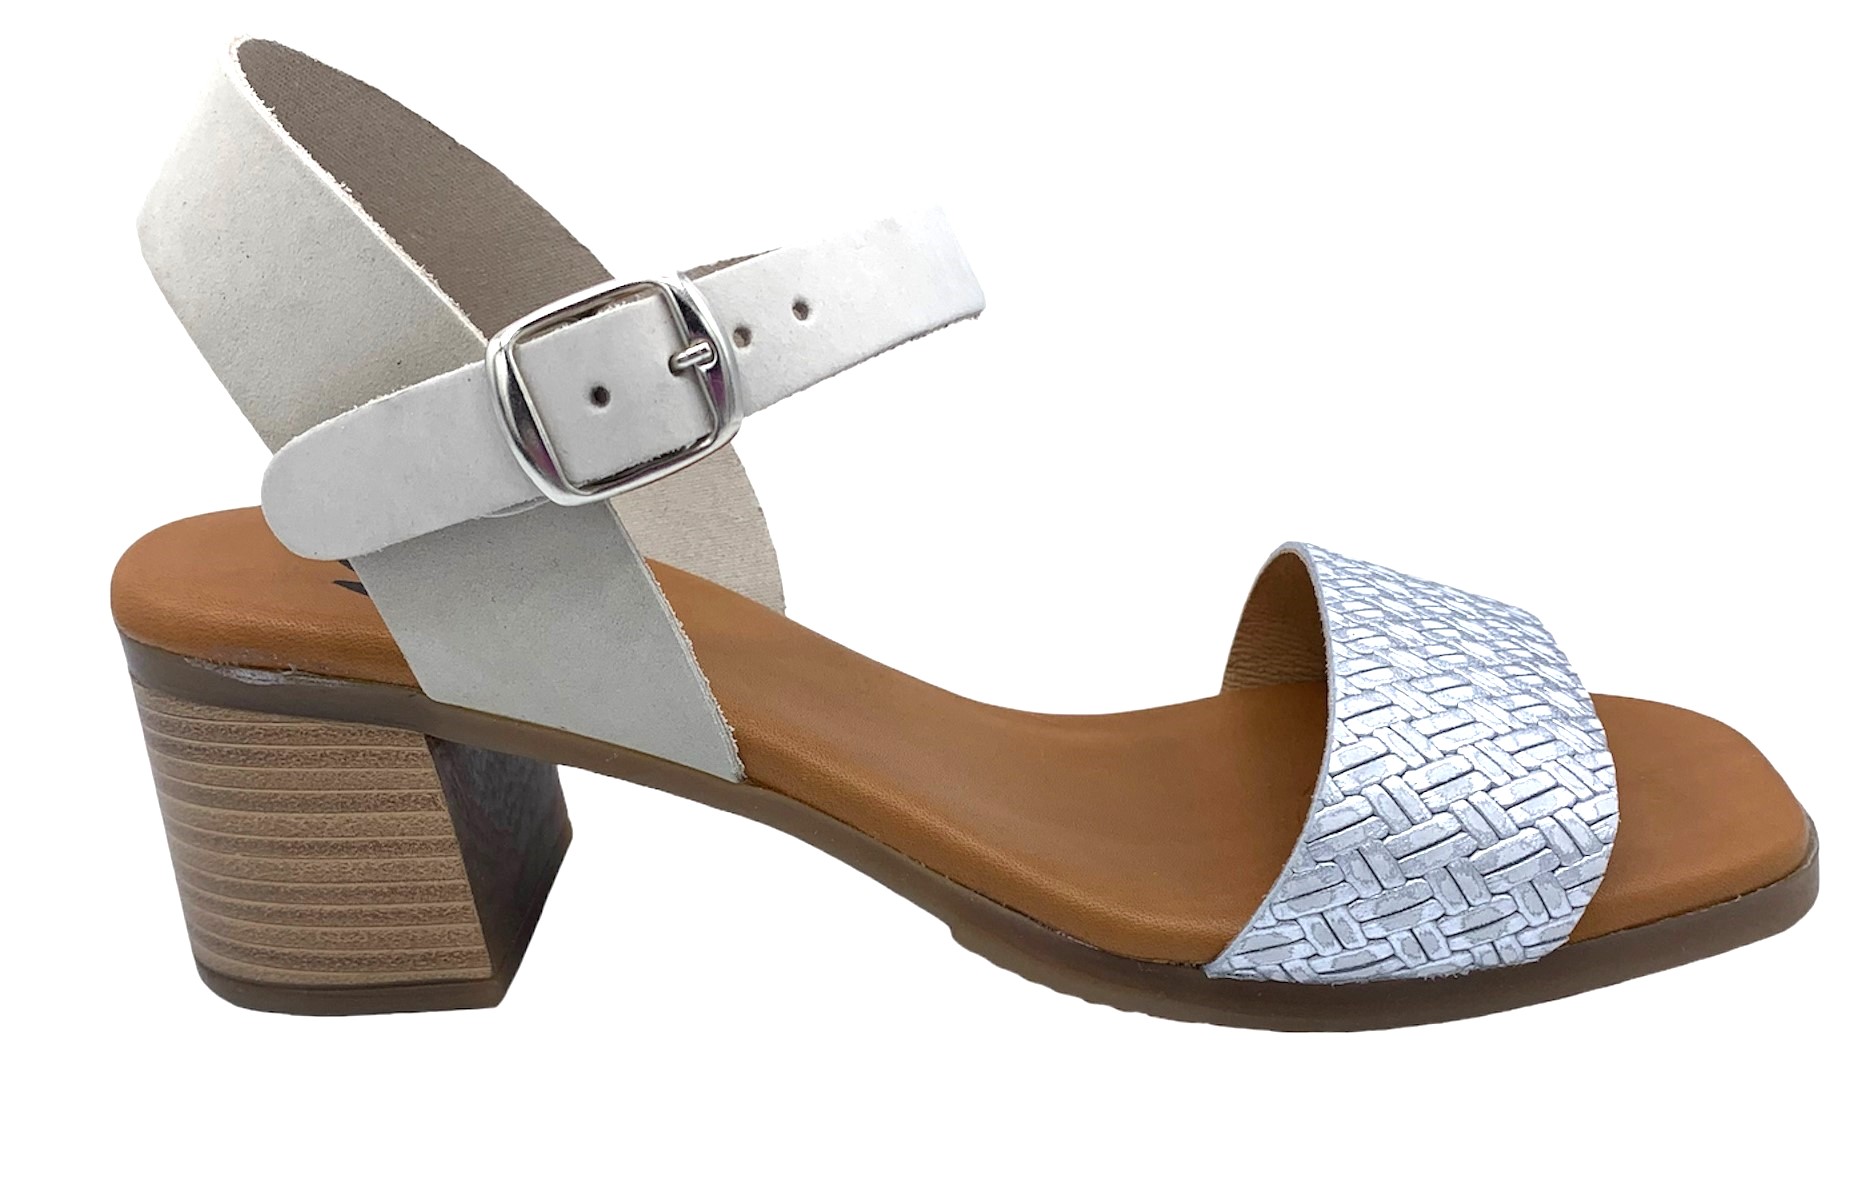 Dámské kožené sandále na podpatku MISSTIC 116004 sv.šedé Velikost: 38 (EU)